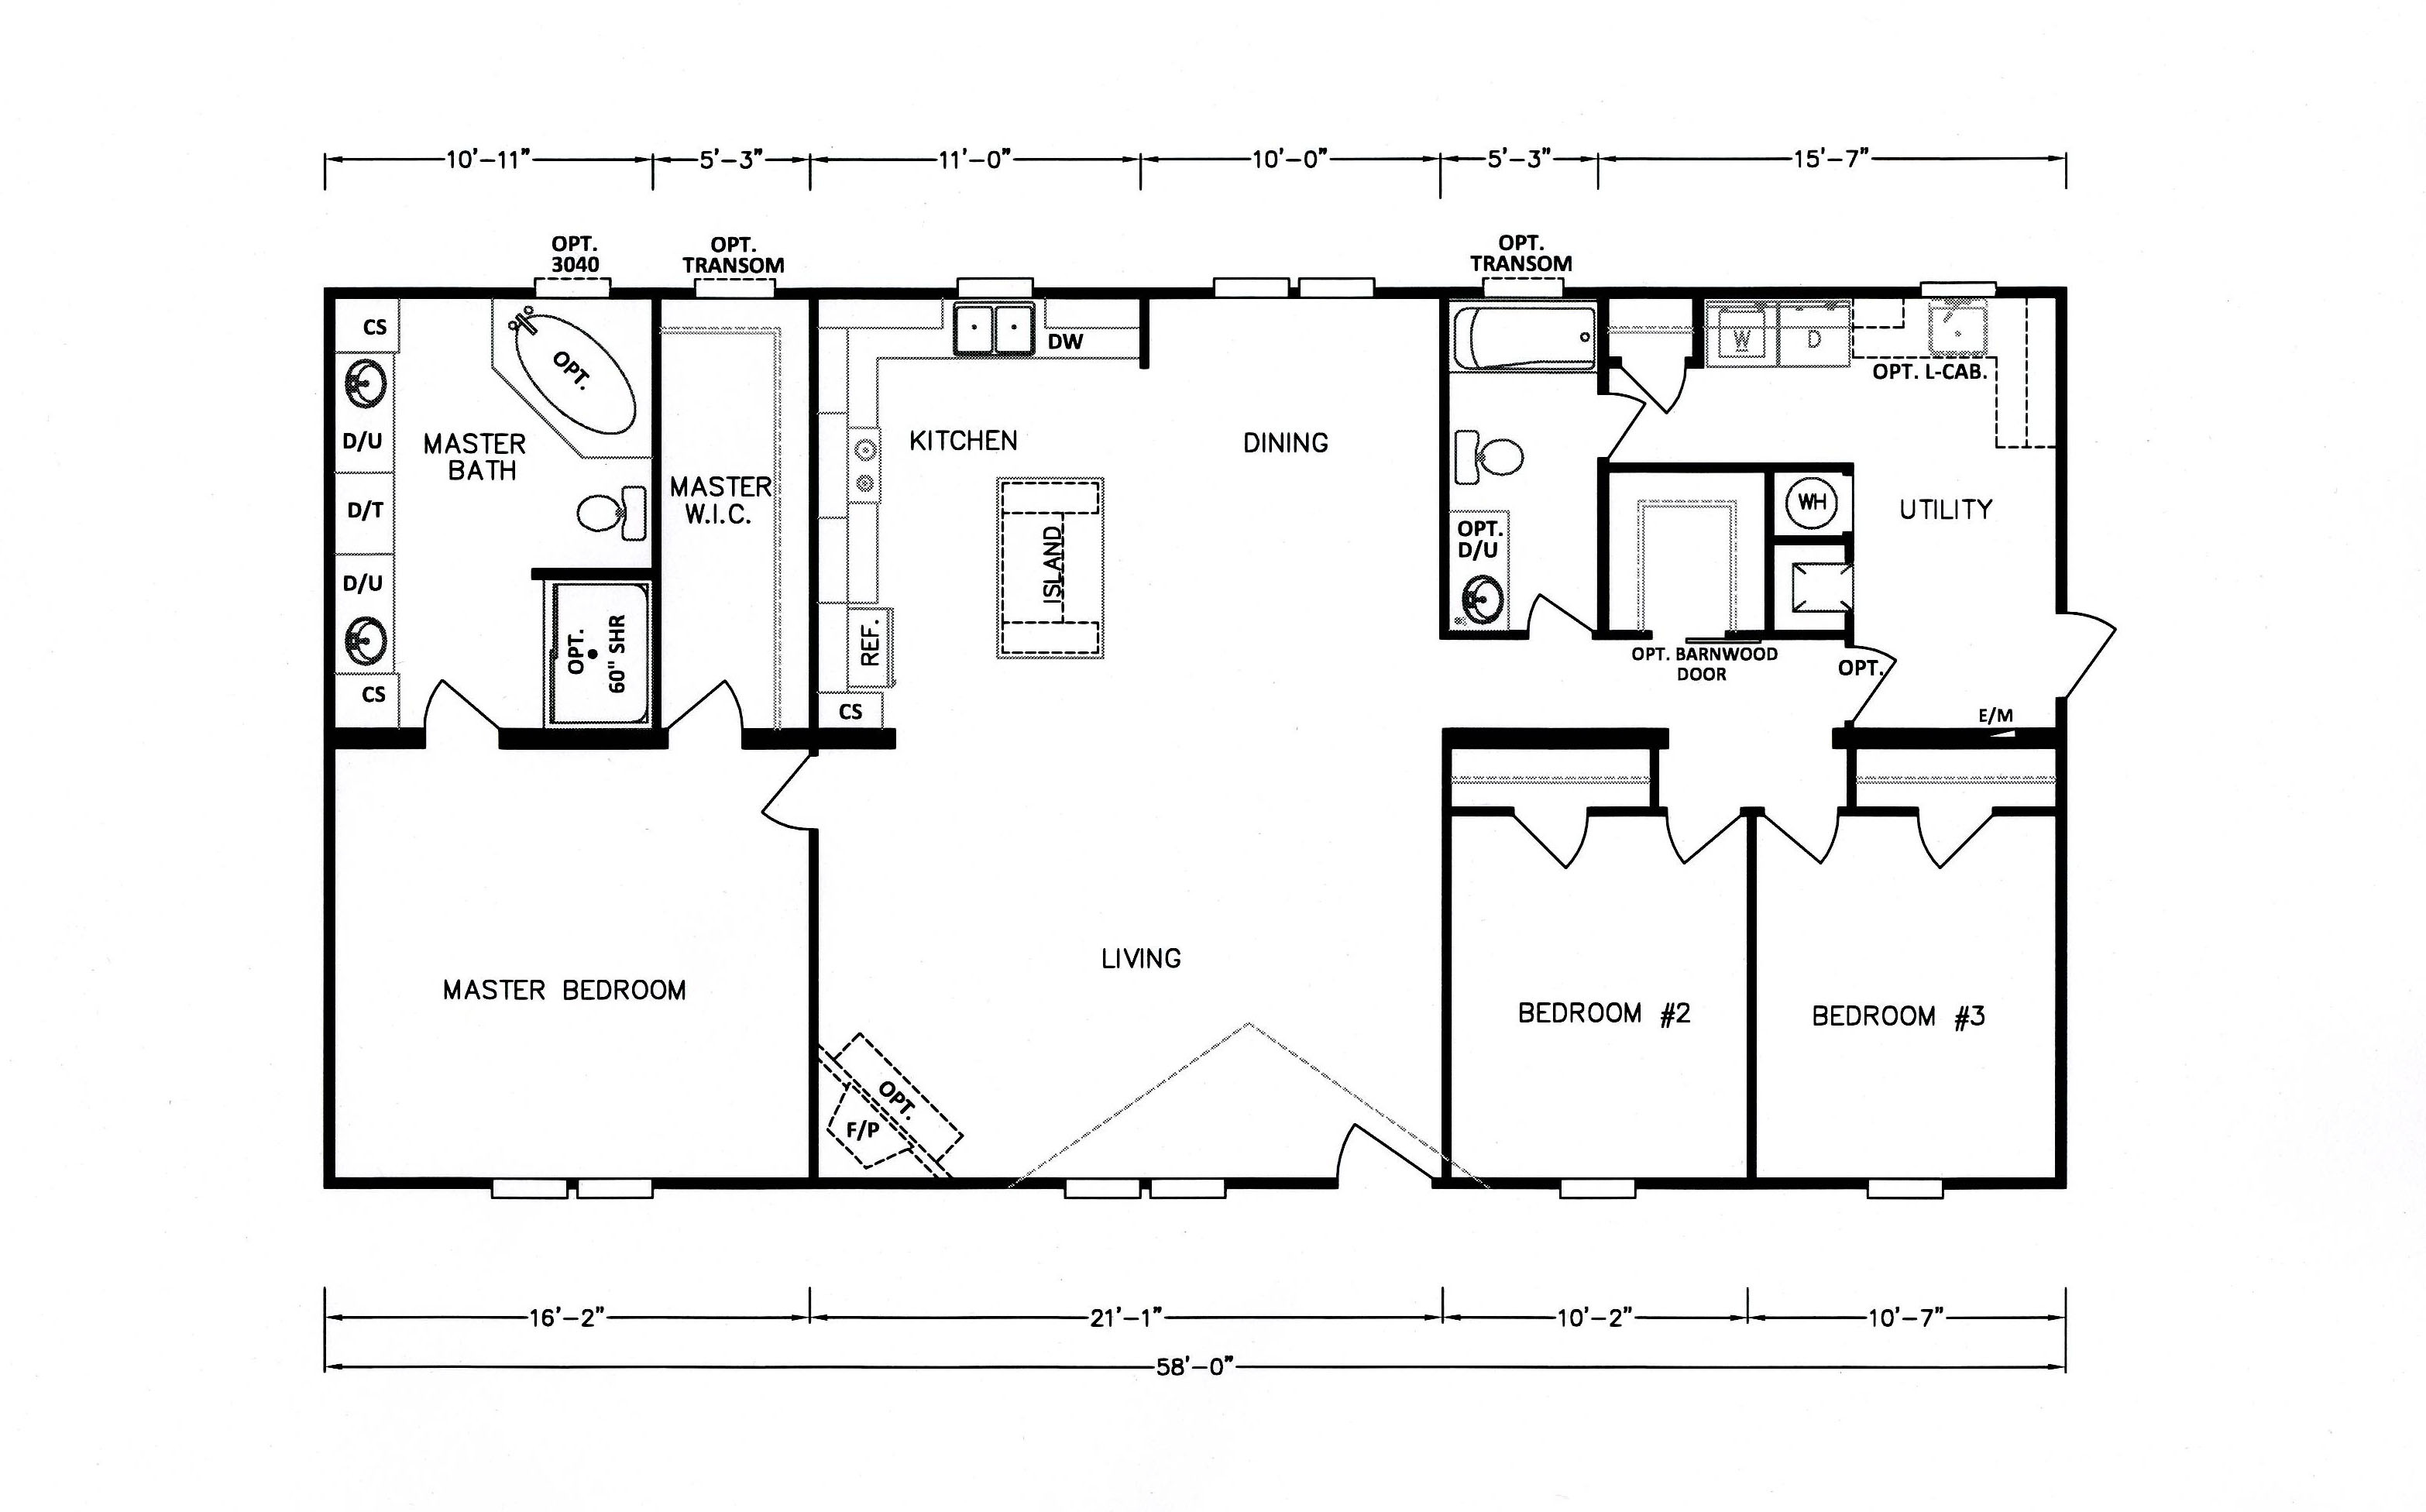 2005 Fleetwood Entertainer Mobile Home Floor Plan